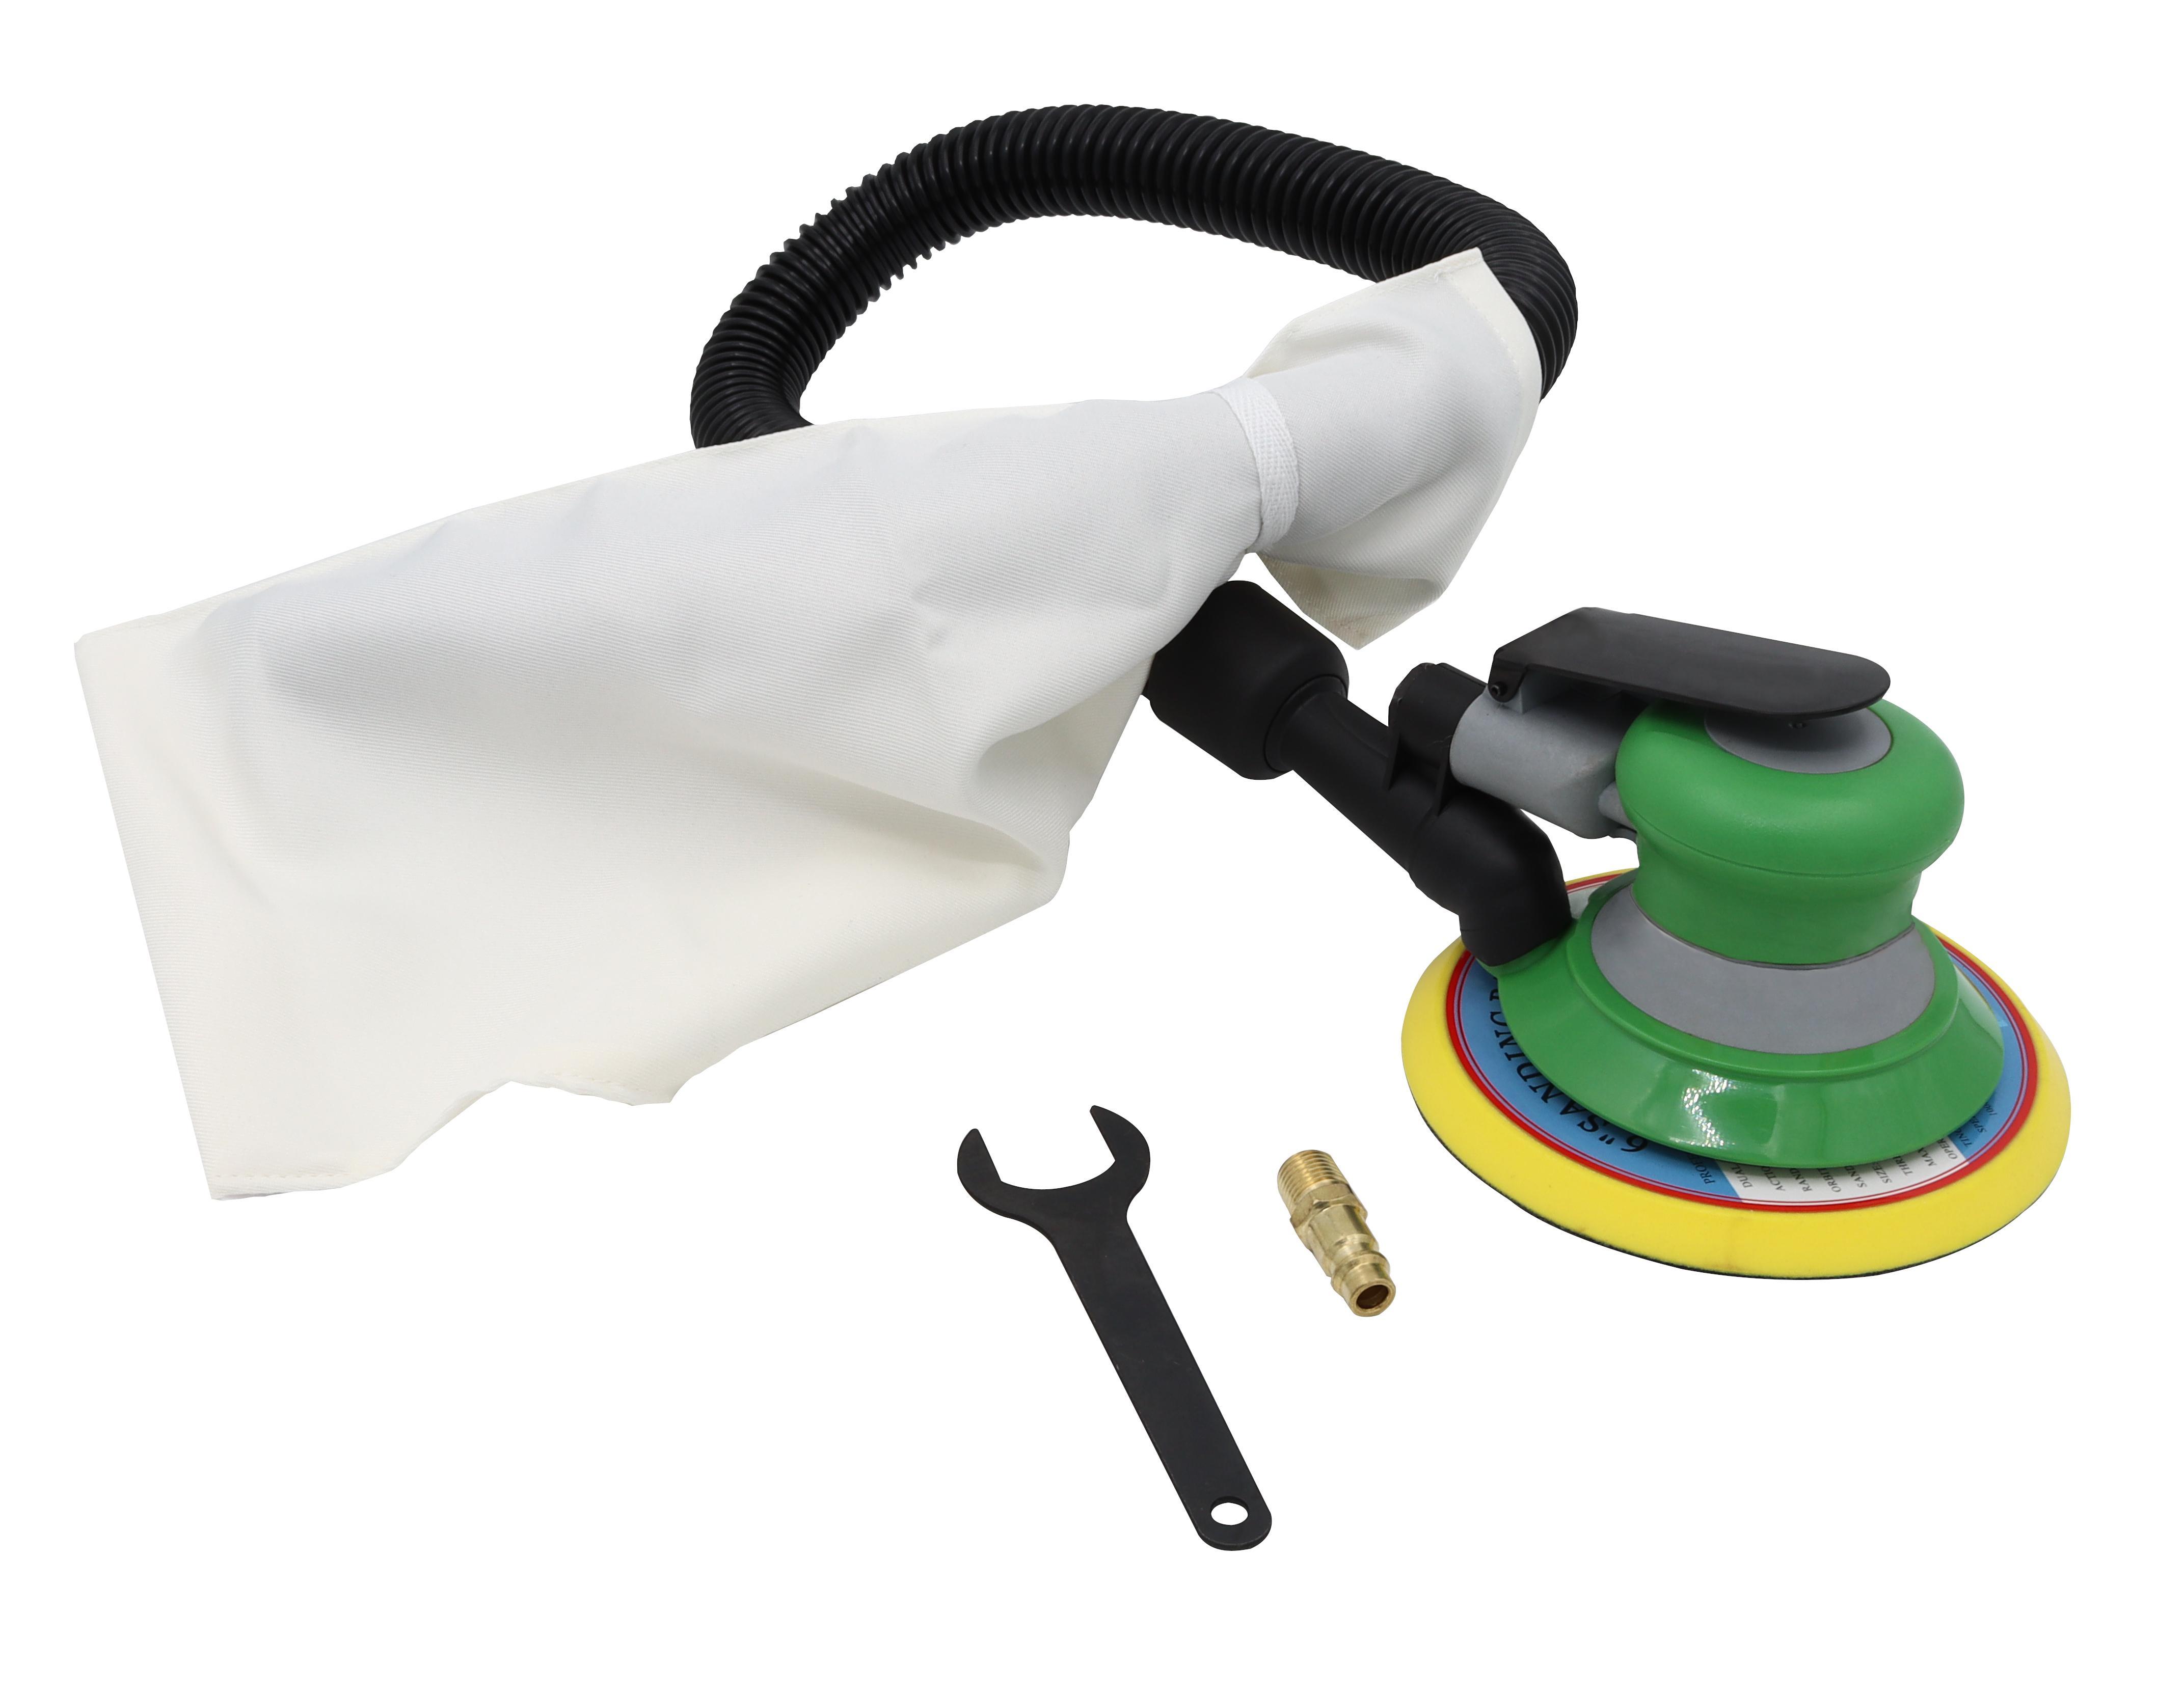 Druckluftschleifer pneumatisch mit 5 mm Hub 150 mm | Schleifer Exzenter schleifen Druckluft